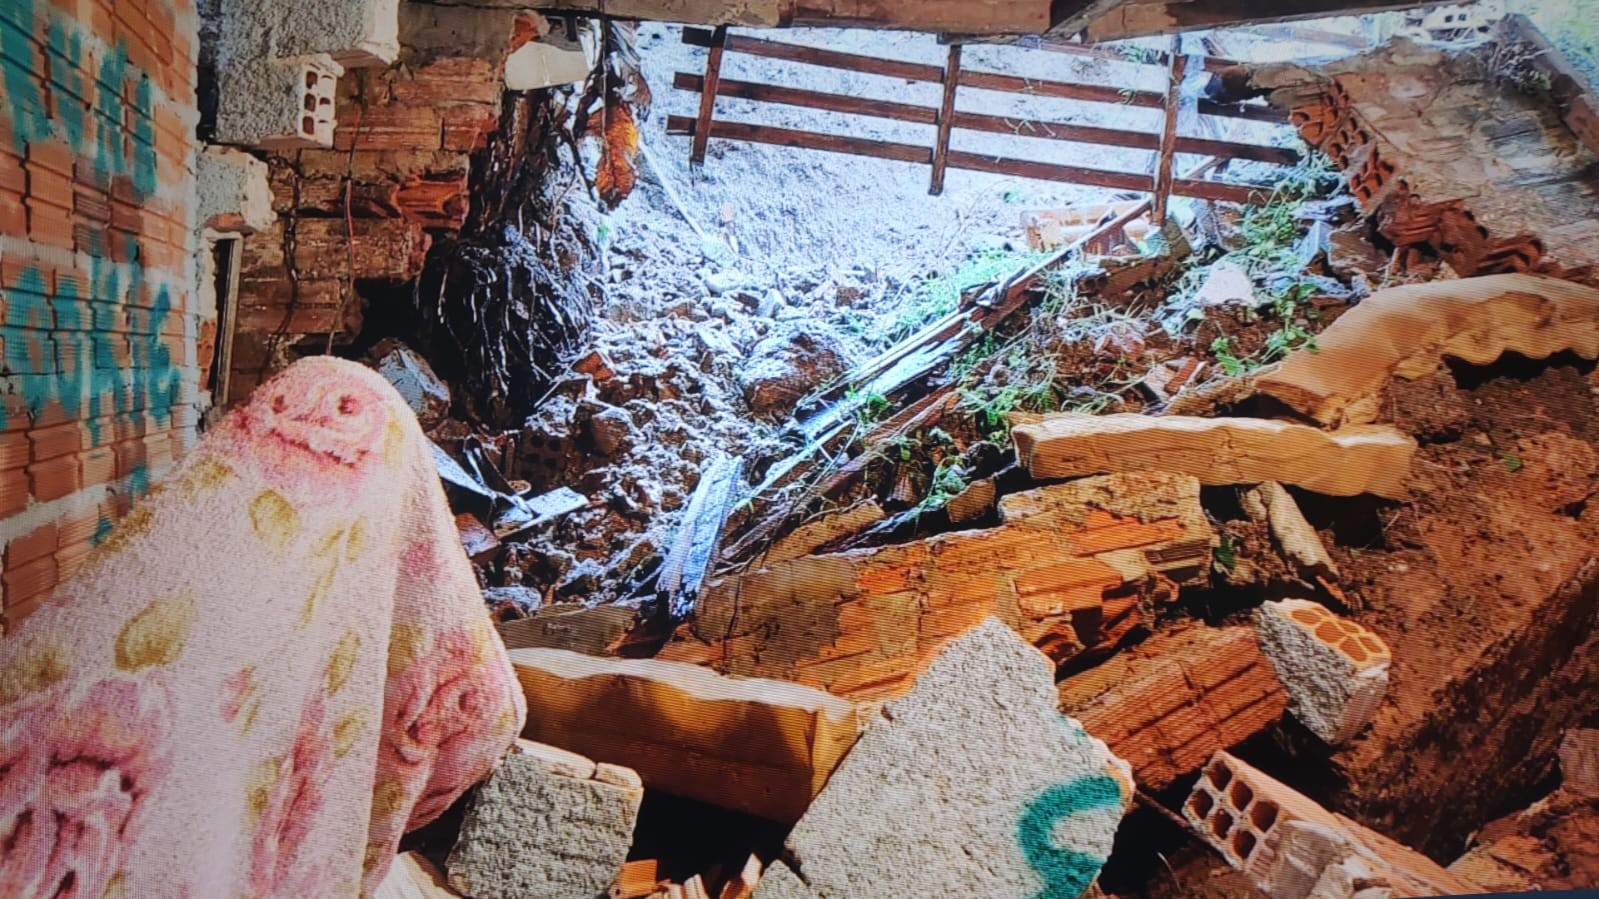 Mãe relata que filha estava em casa com risco de desabar em meio a ciclone em SC: 'Parede caiu'